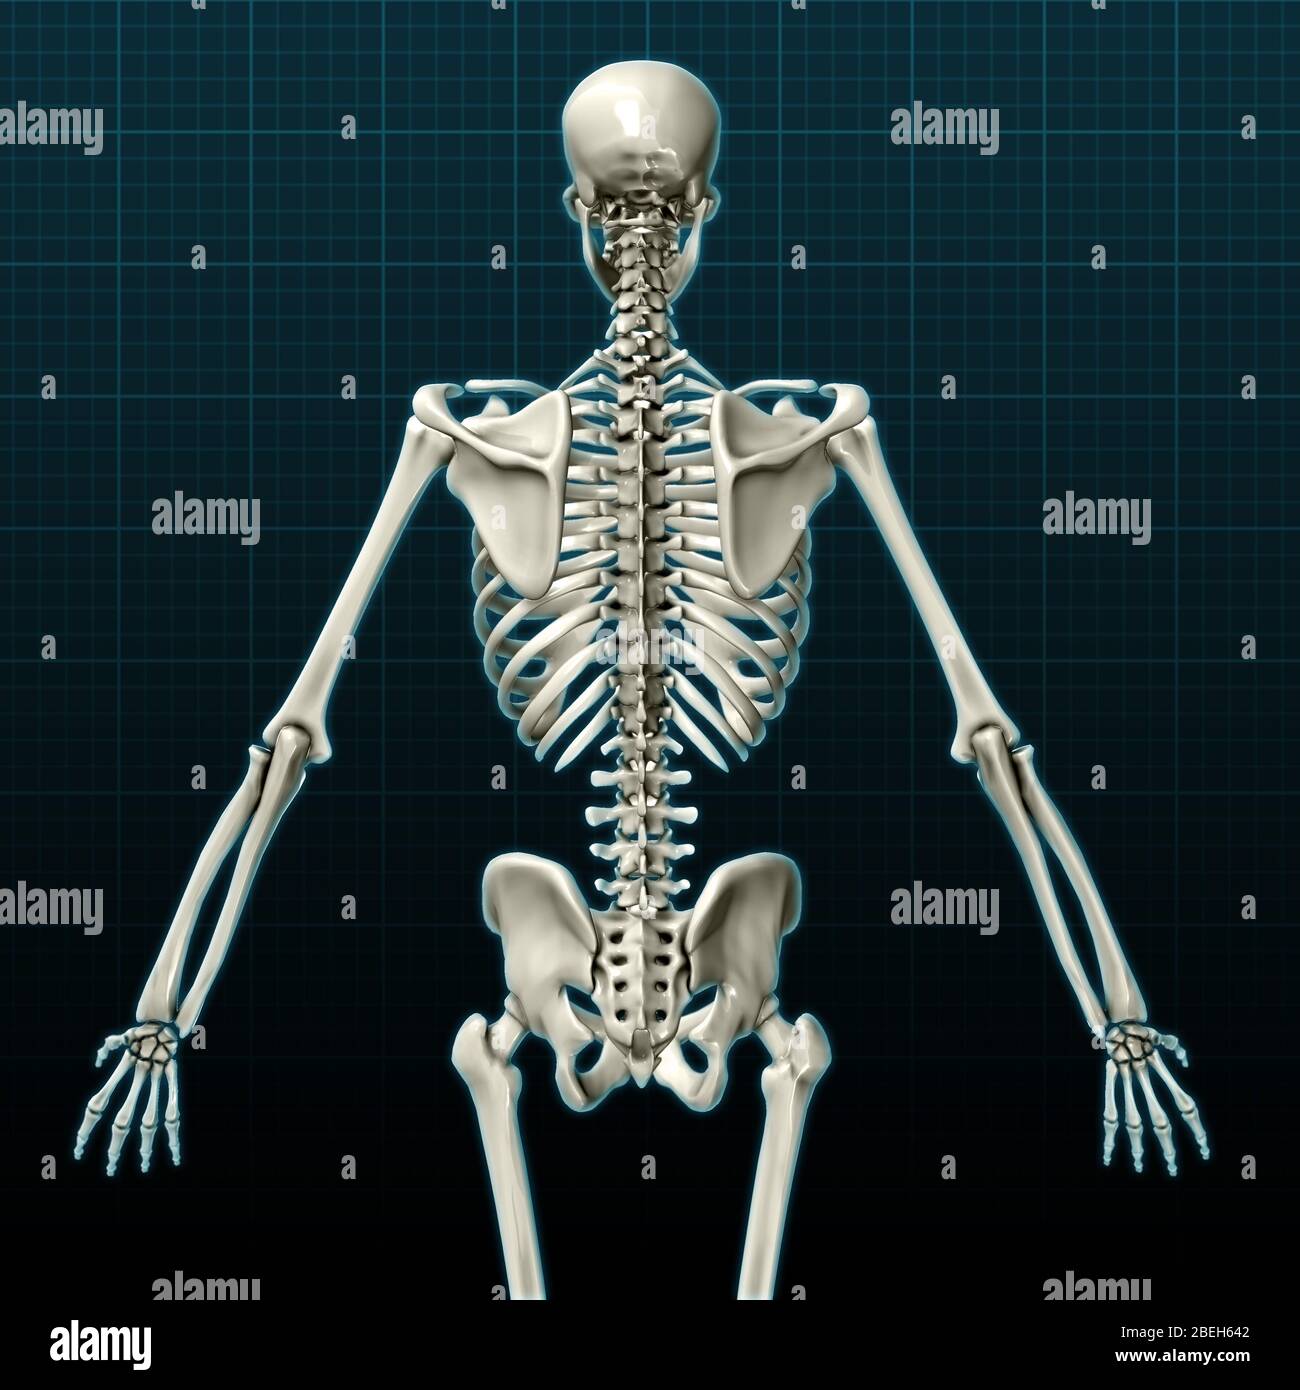 Human Skeleton, posterior view Stock Photo